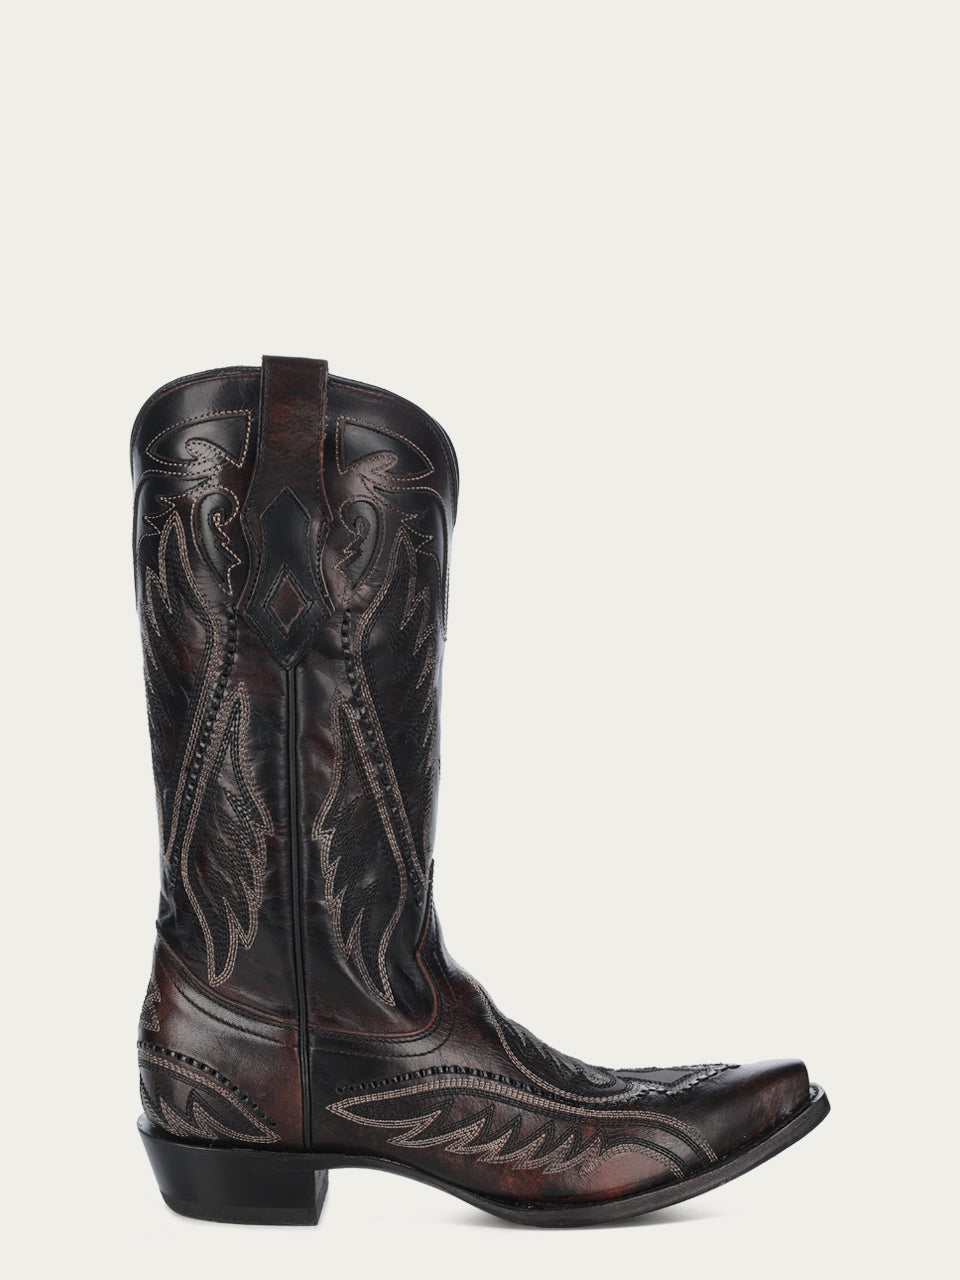 Corral Men's Woven Brown Snip Toe Cowboy Boots - Dudes Boutique